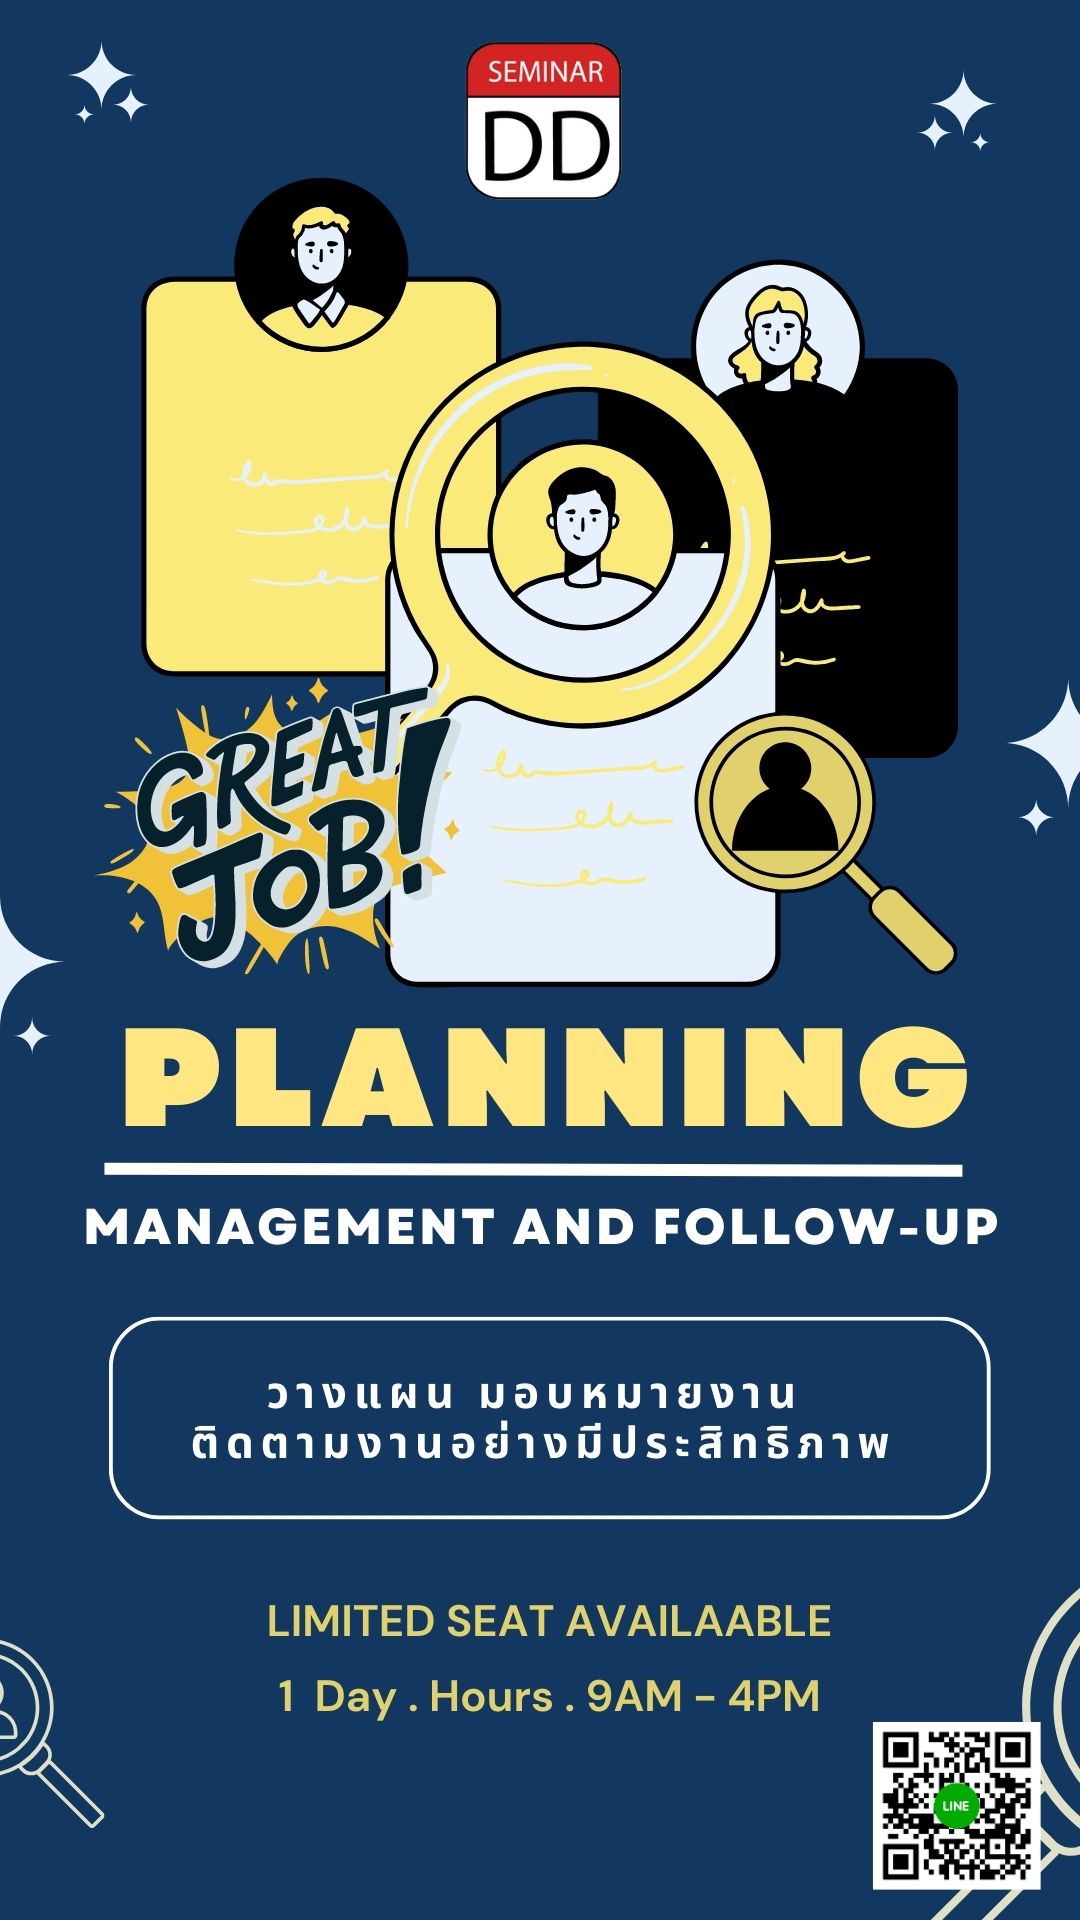 หลักสูตร การวางแผน การมอบหมายงาน และการติดตามงานอย่างมีประสิทธิภาพ (Planning management and Follow-up)